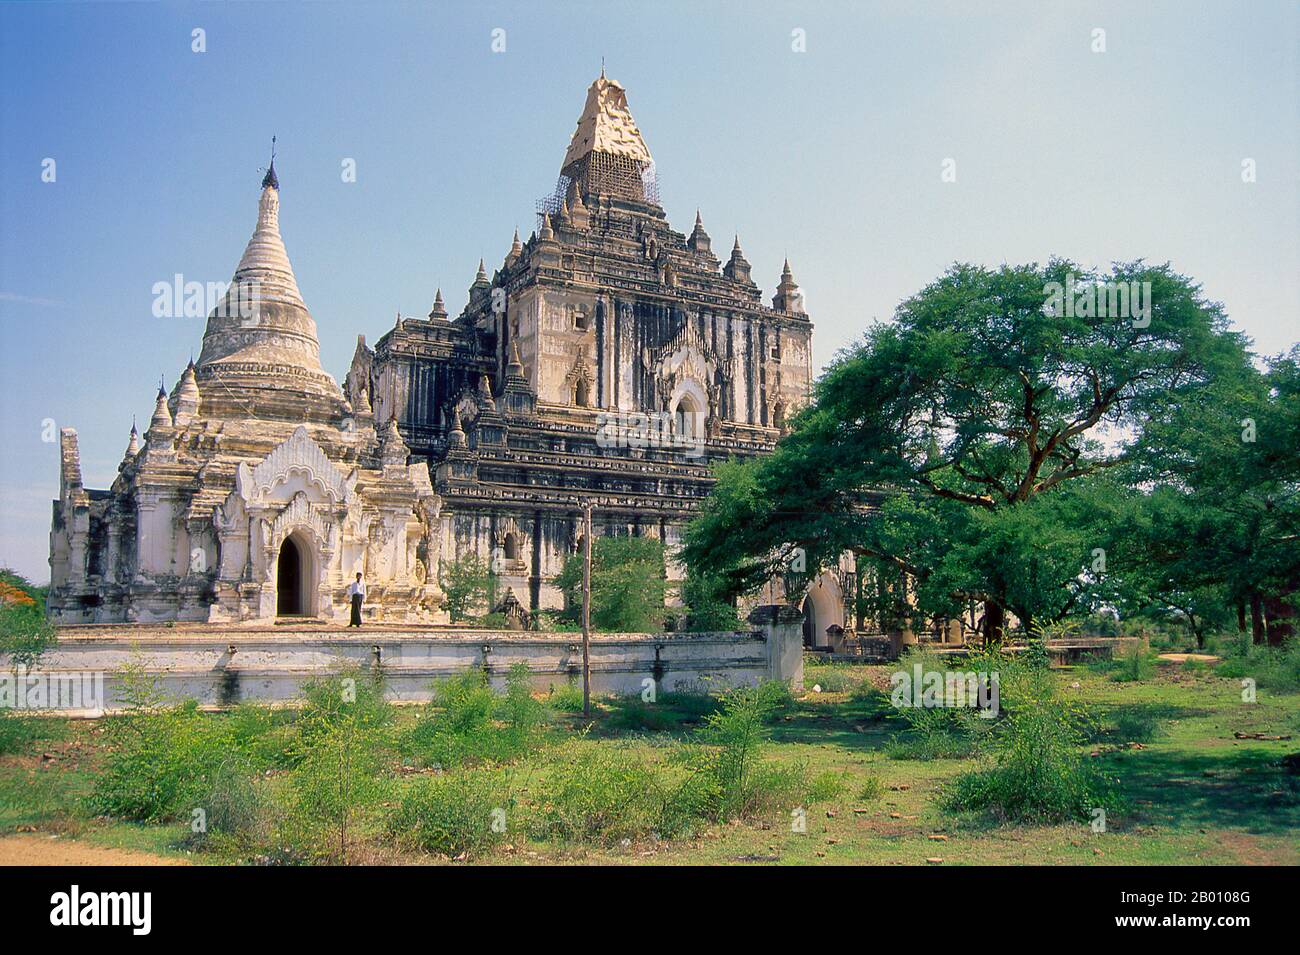 Birmania: Tempio di Thatbyinnyu, Bagan (Pagan) Città Antica. Il tempio di Thatbyinnyu fu costruito a metà del XII secolo durante il regno del re Alaungsitthu. Bagan, ex Pagan, è stato costruito principalmente tra il 11 ° secolo e 13 ° secolo. Formalmente chiamato Arimaddanapura o Arimaddana (la città del Crusher Enemy) e conosciuto anche come Tambadipa (la terra del rame) o Tassadessa (la terra dei cortei), era la capitale di diversi regni antichi in Birmania. Foto Stock